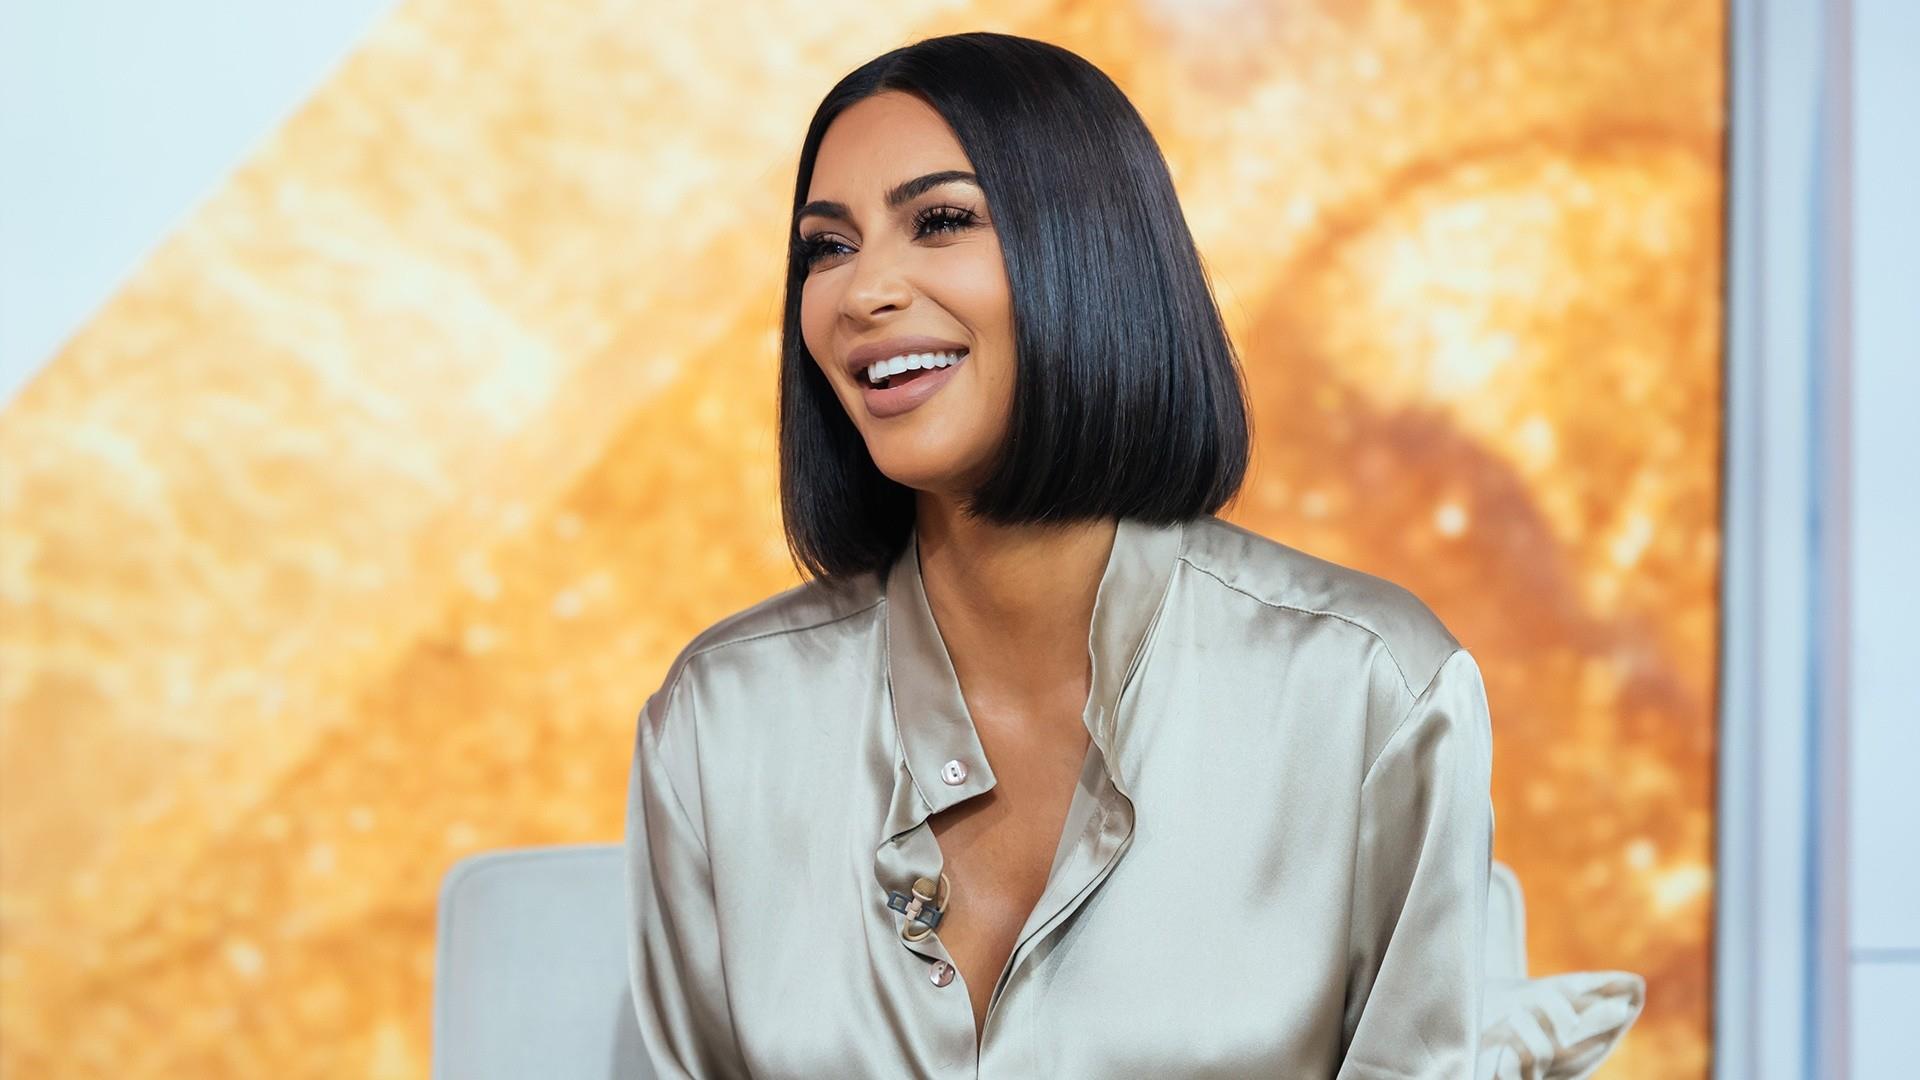 Kim Kardashian responds to Skims maternity shapewear controversy